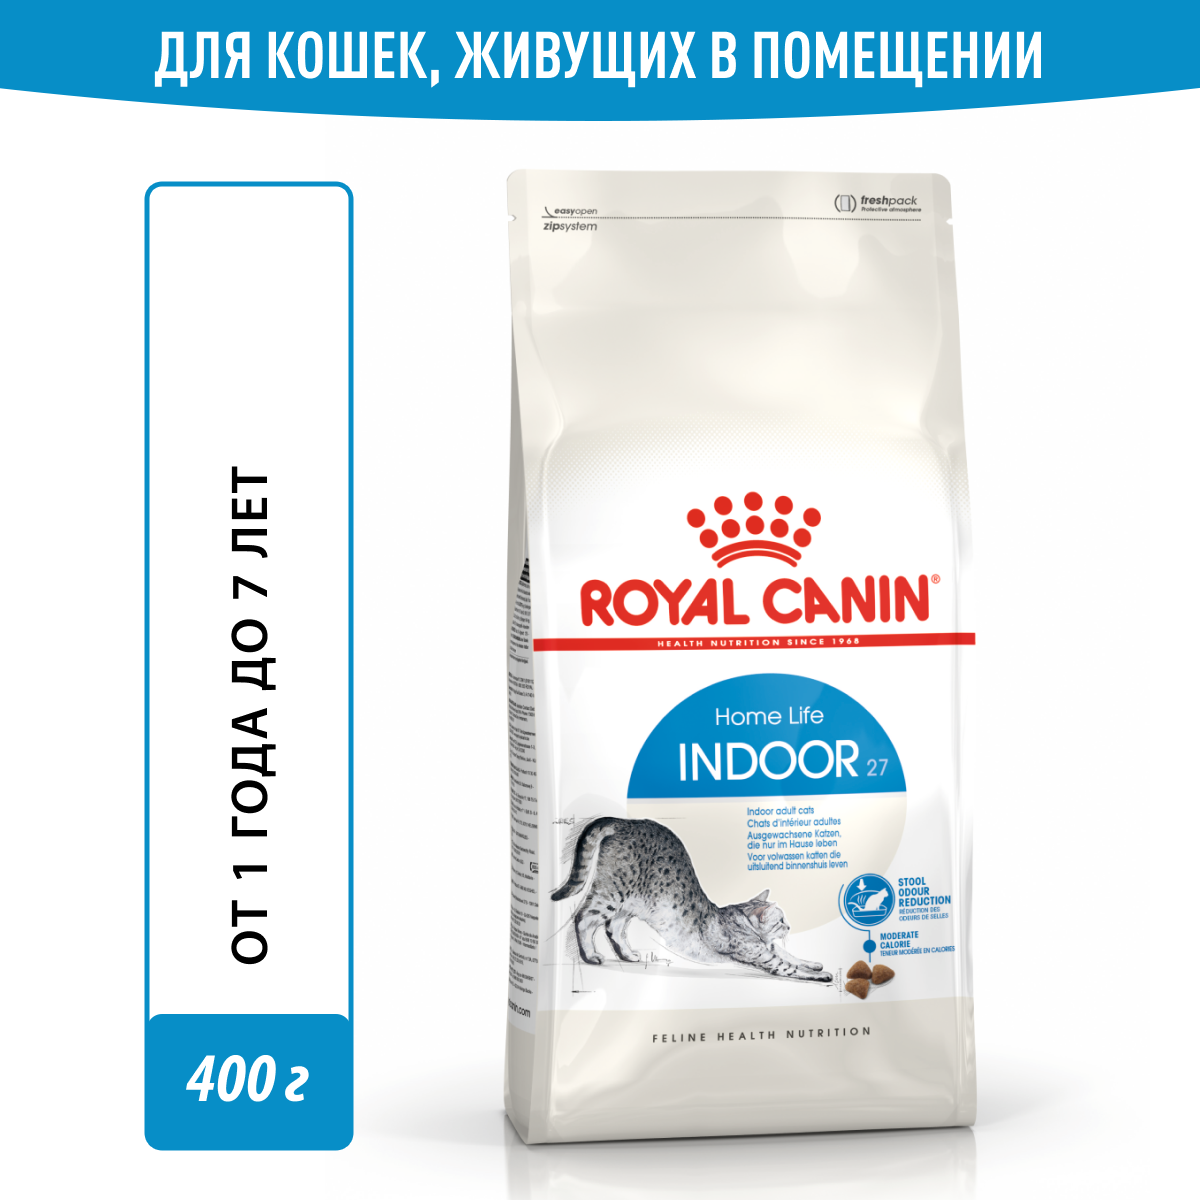 Royal Canin RC Для домашн. кошек c норм. весом 1-7 лет (Indoor 27) 25290040R0, 0,4 кг